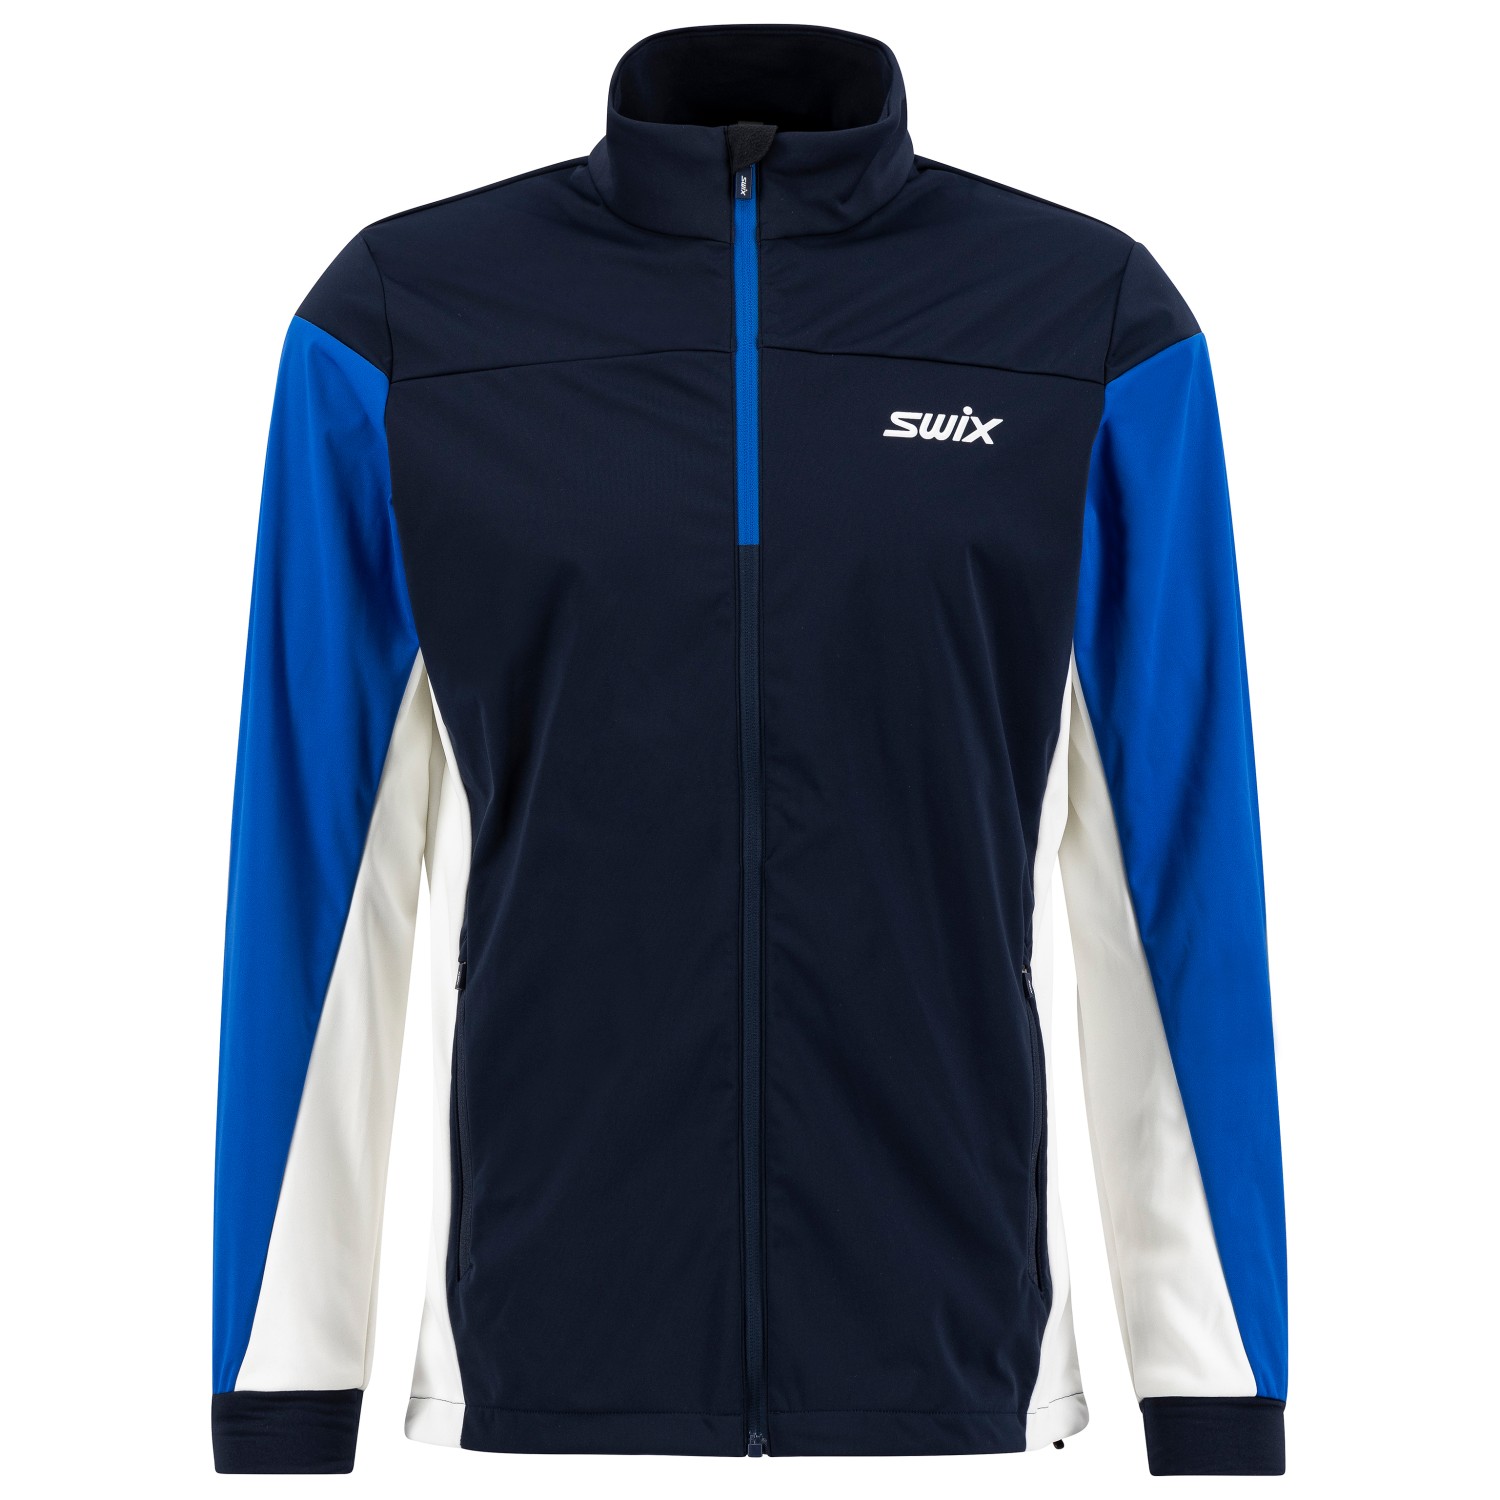 Куртка для беговых лыж Swix Cross, цвет Dark Navy/Olympian Blue